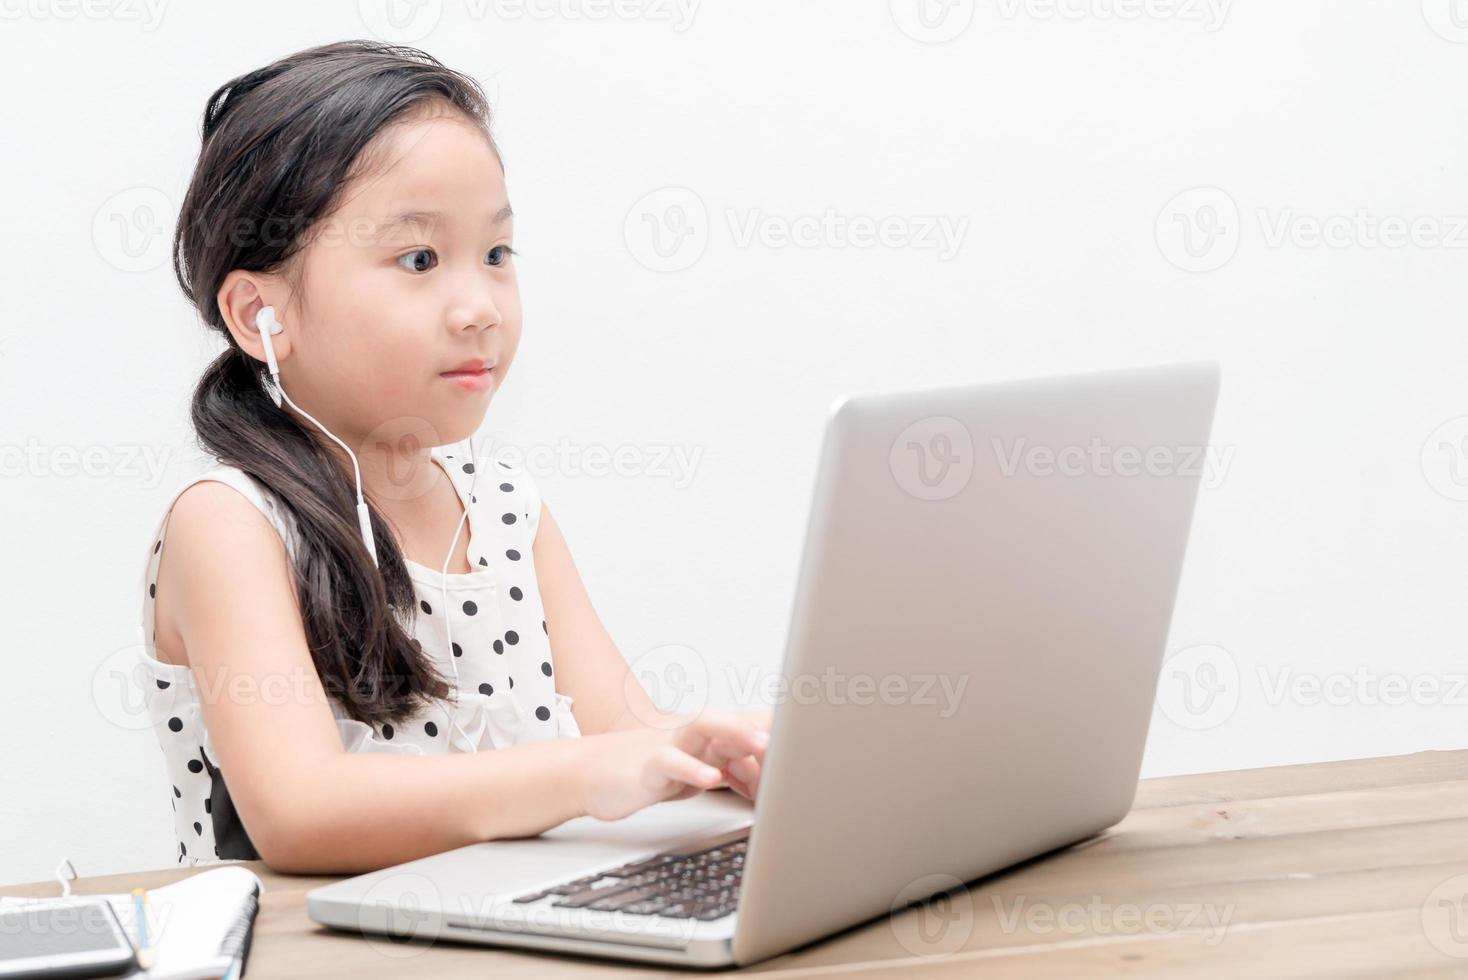 süß Schüler Mädchen mit Laptop Computer auf das Tabelle foto